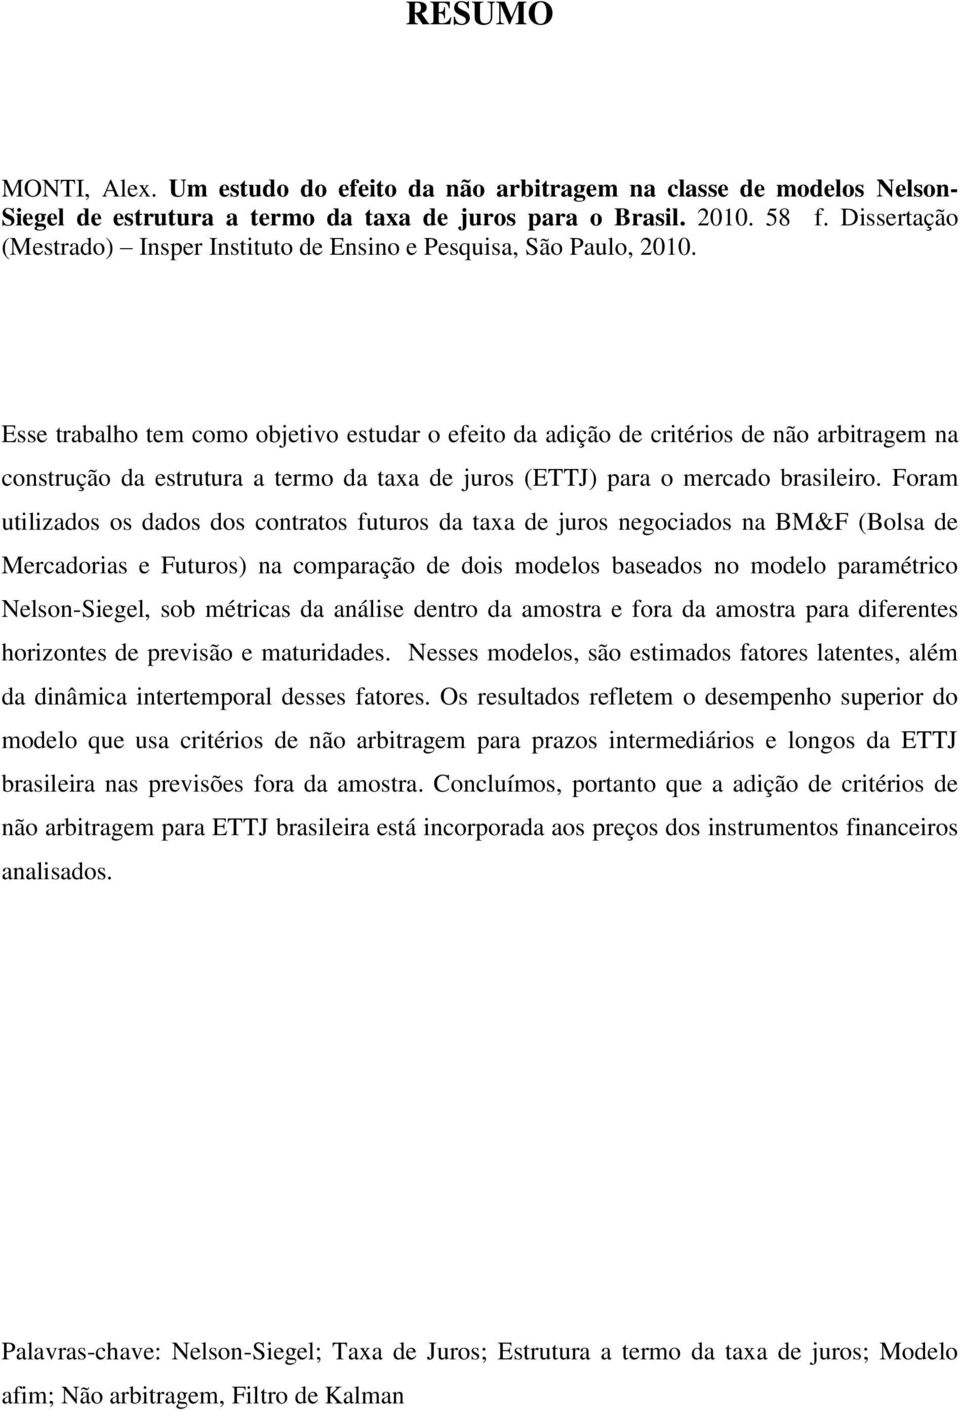 Esse trabalho tem como objetivo estudar o efeito da adição de critérios de não arbitragem na construção da estrutura a termo da taxa de juros (ETTJ) para o mercado brasileiro.